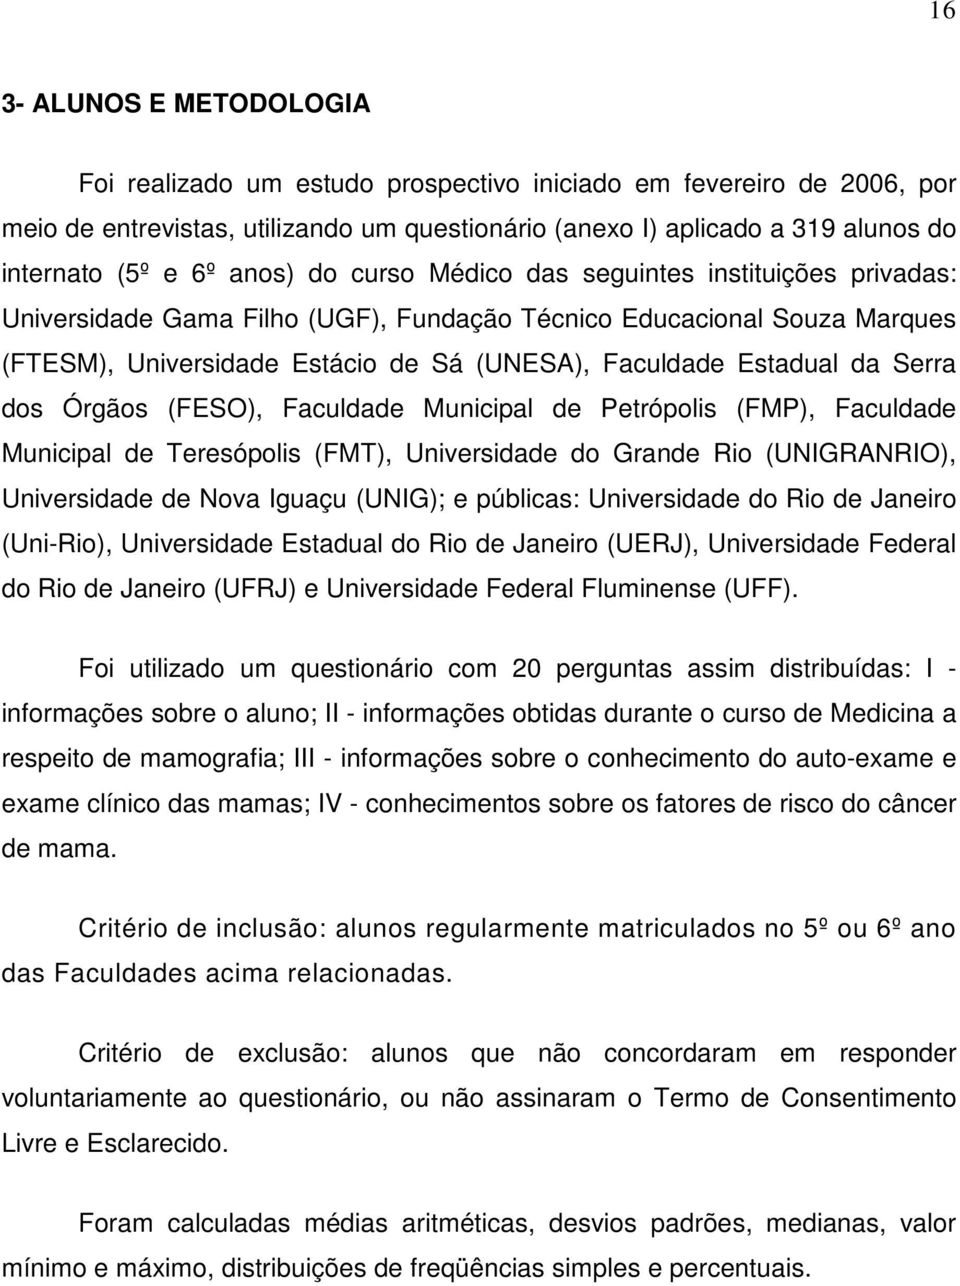 Serra dos Órgãos (FESO), Faculdade Municipal de Petrópolis (FMP), Faculdade Municipal de Teresópolis (FMT), Universidade do Grande Rio (UNIGRANRIO), Universidade de Nova Iguaçu (UNIG); e públicas: